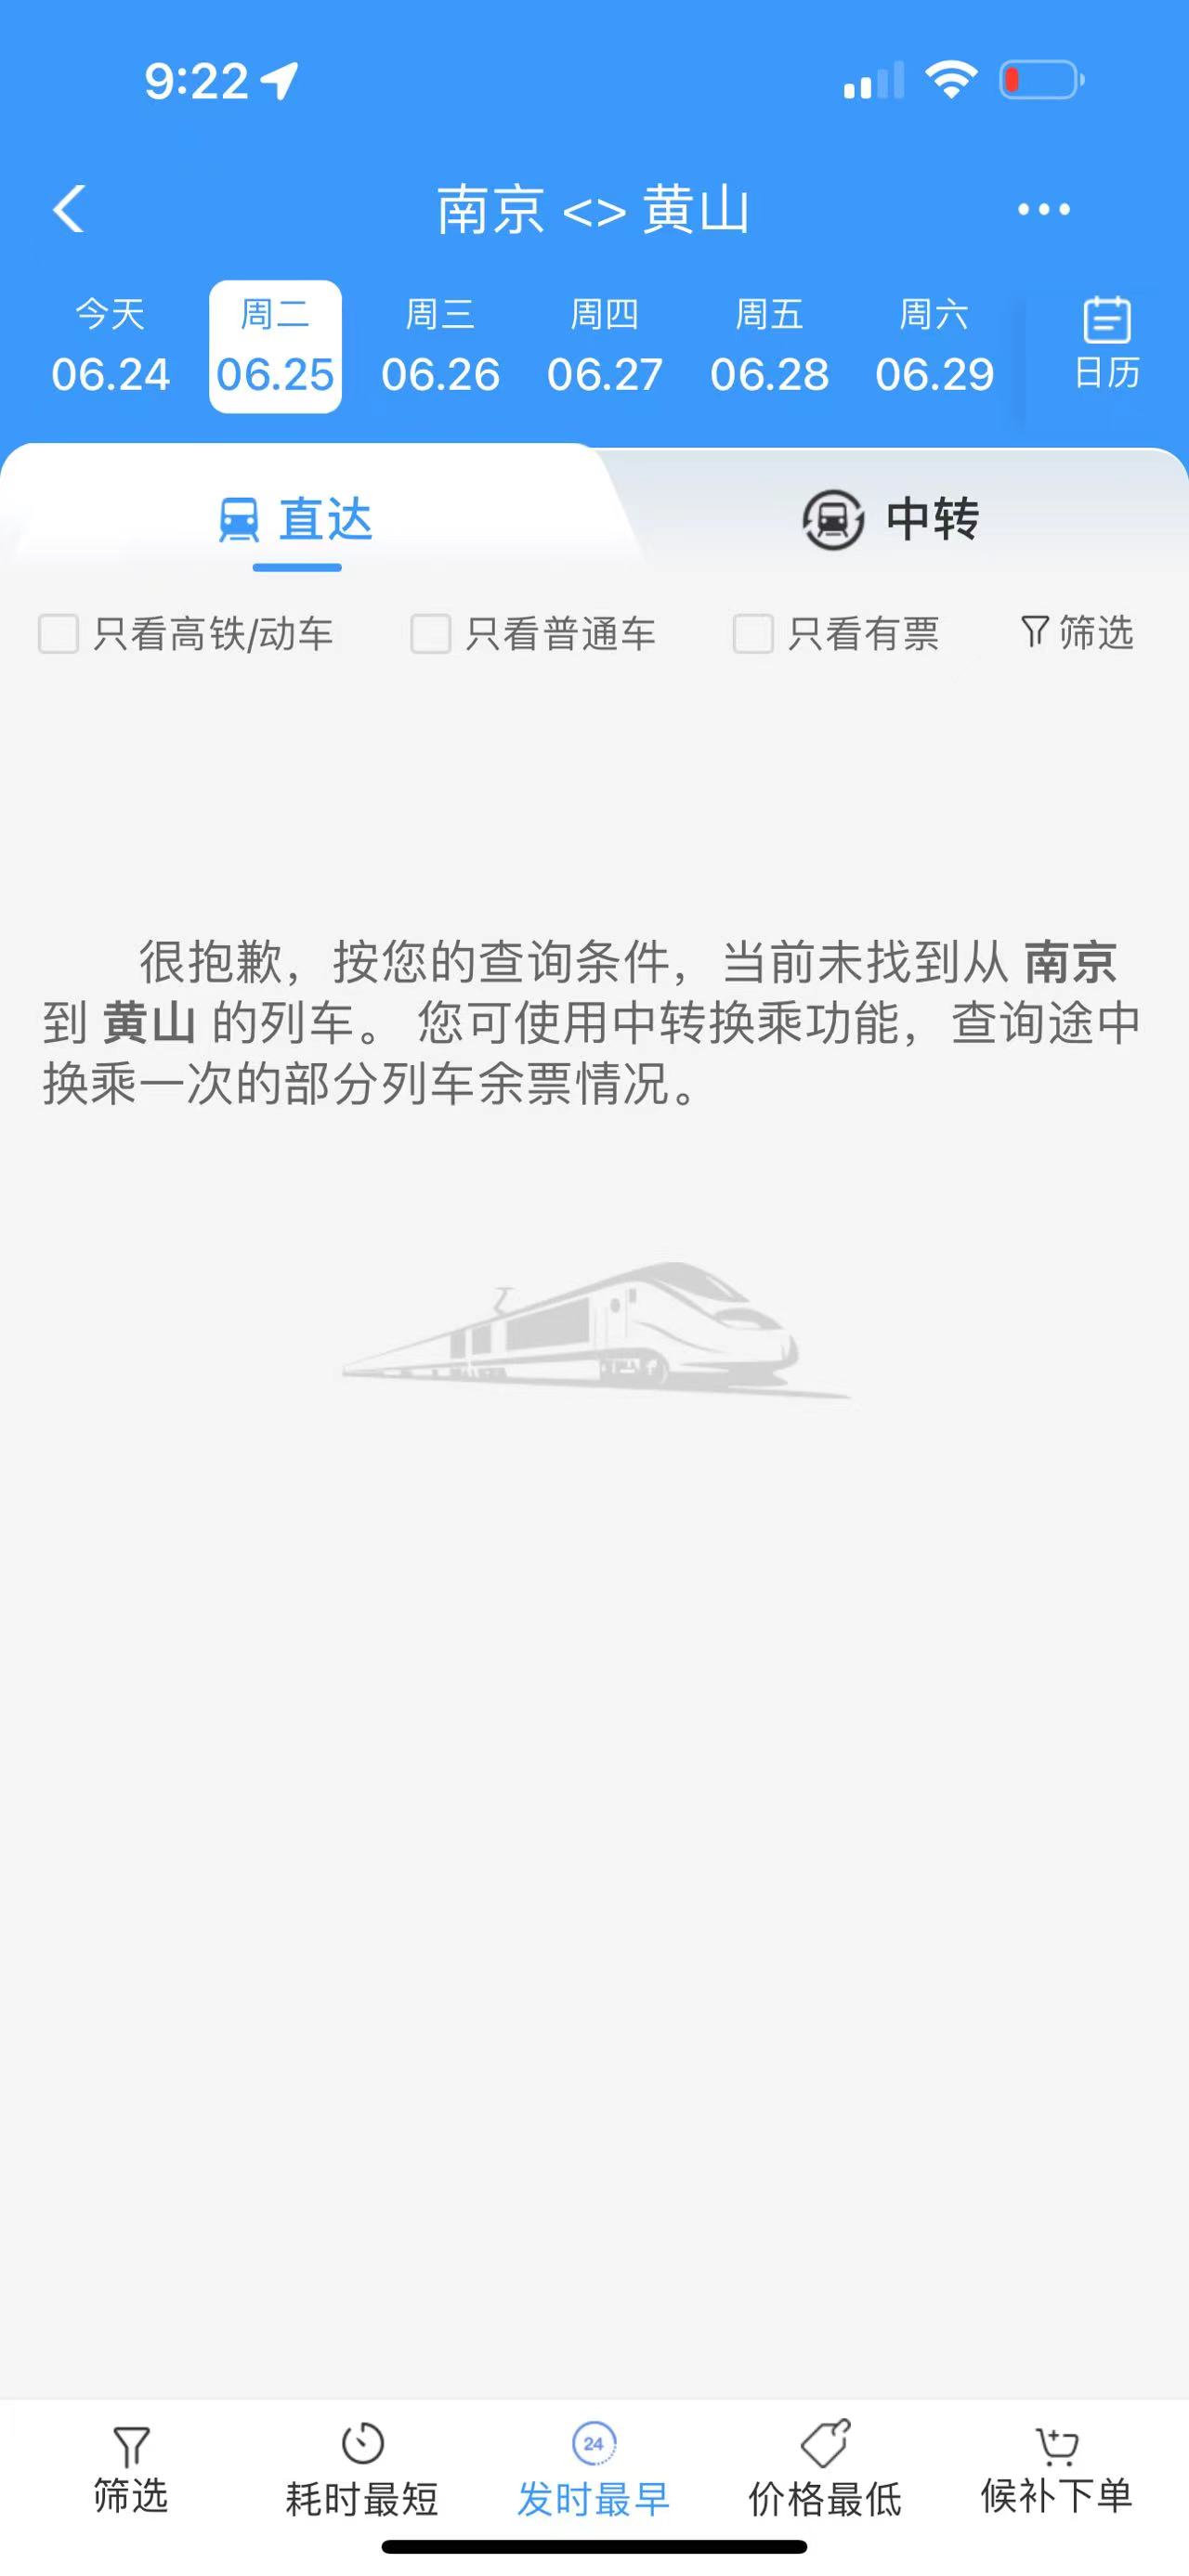 安徽浙江暴雨致部分铁路区段水灾，列车停运至26日插图(2)